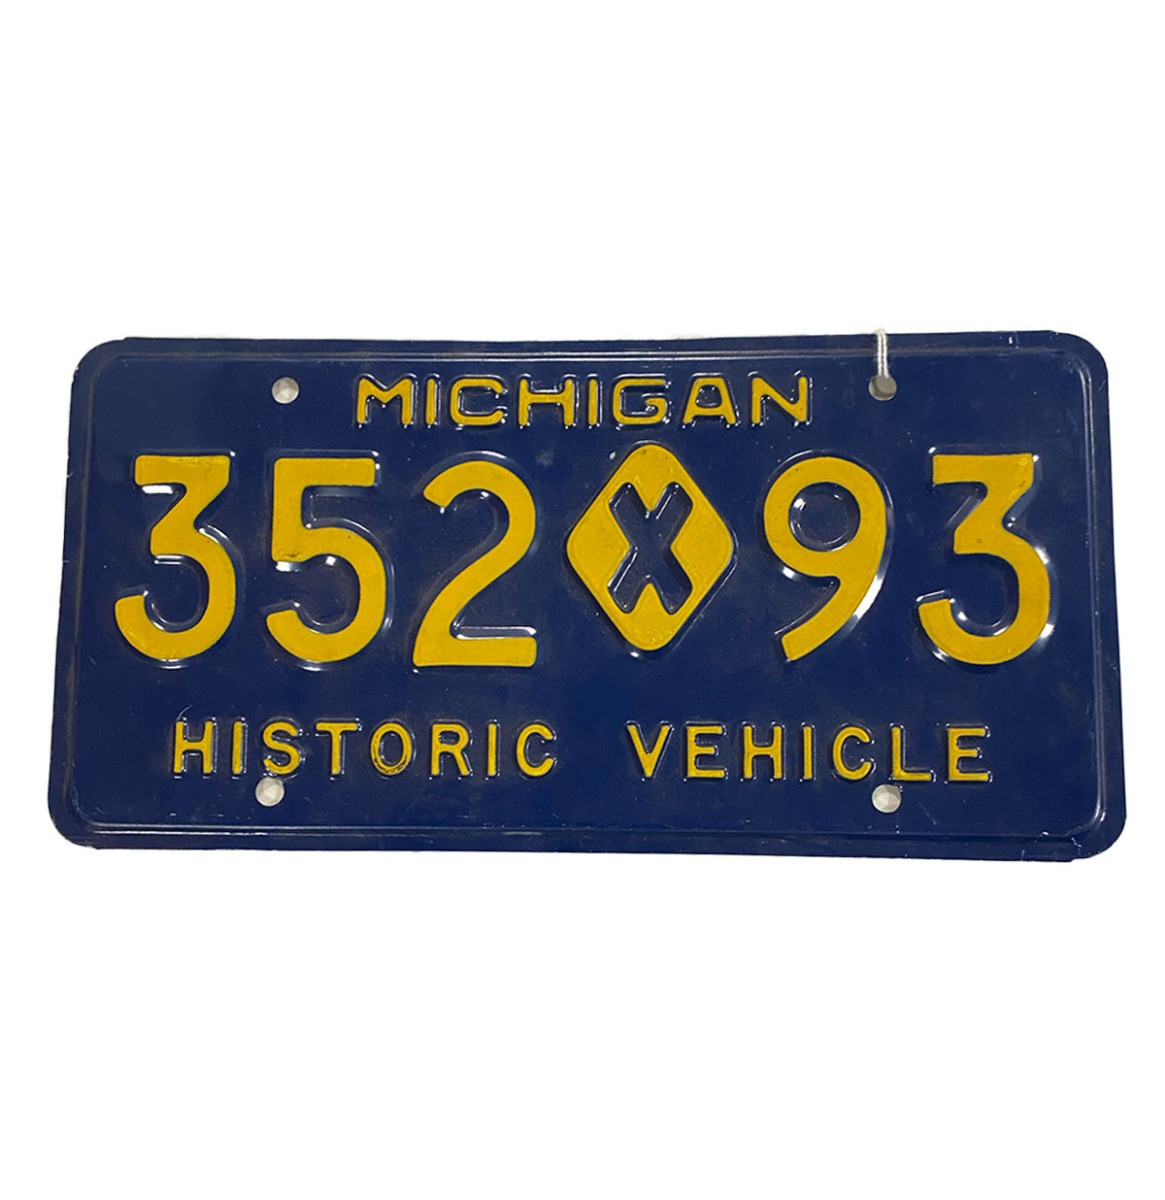 Michigan Historic Vehicle Kentekenplaat - Origineel